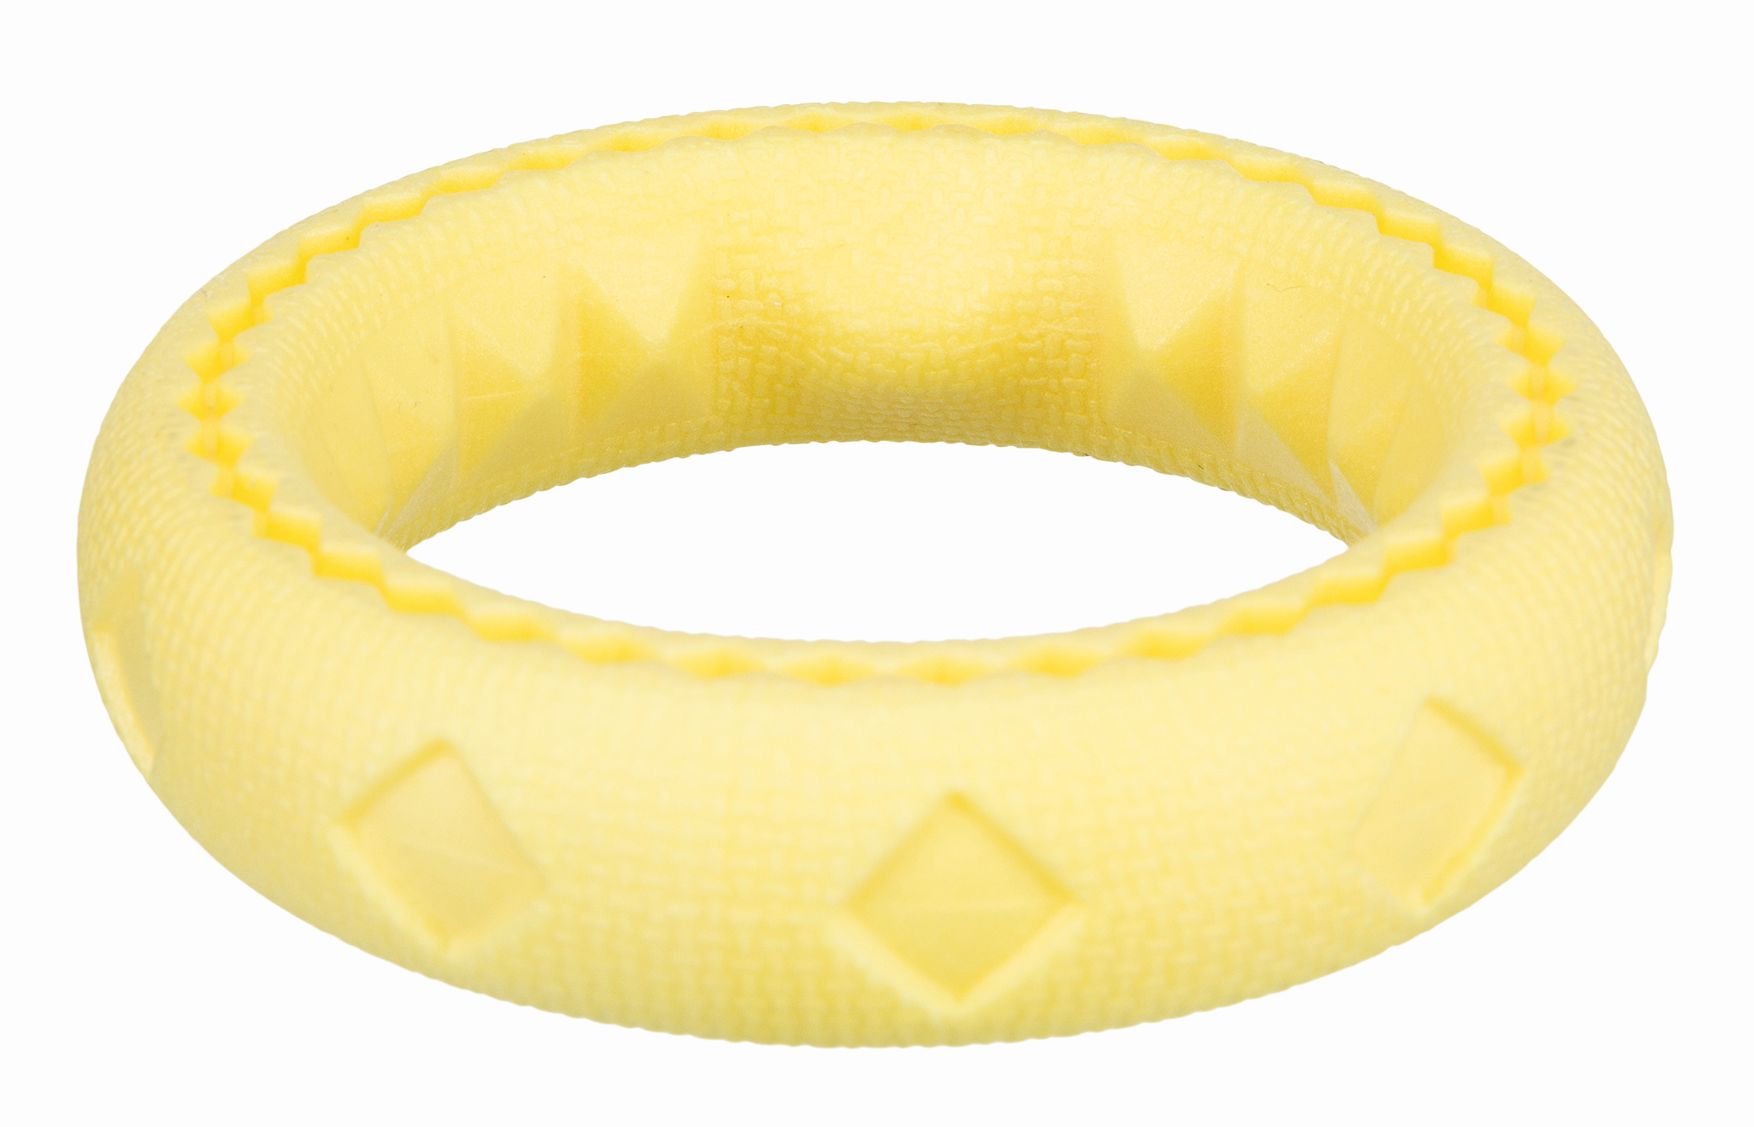  Trixie Кольцо плавающее резиновое для собак, диаметр 11 см